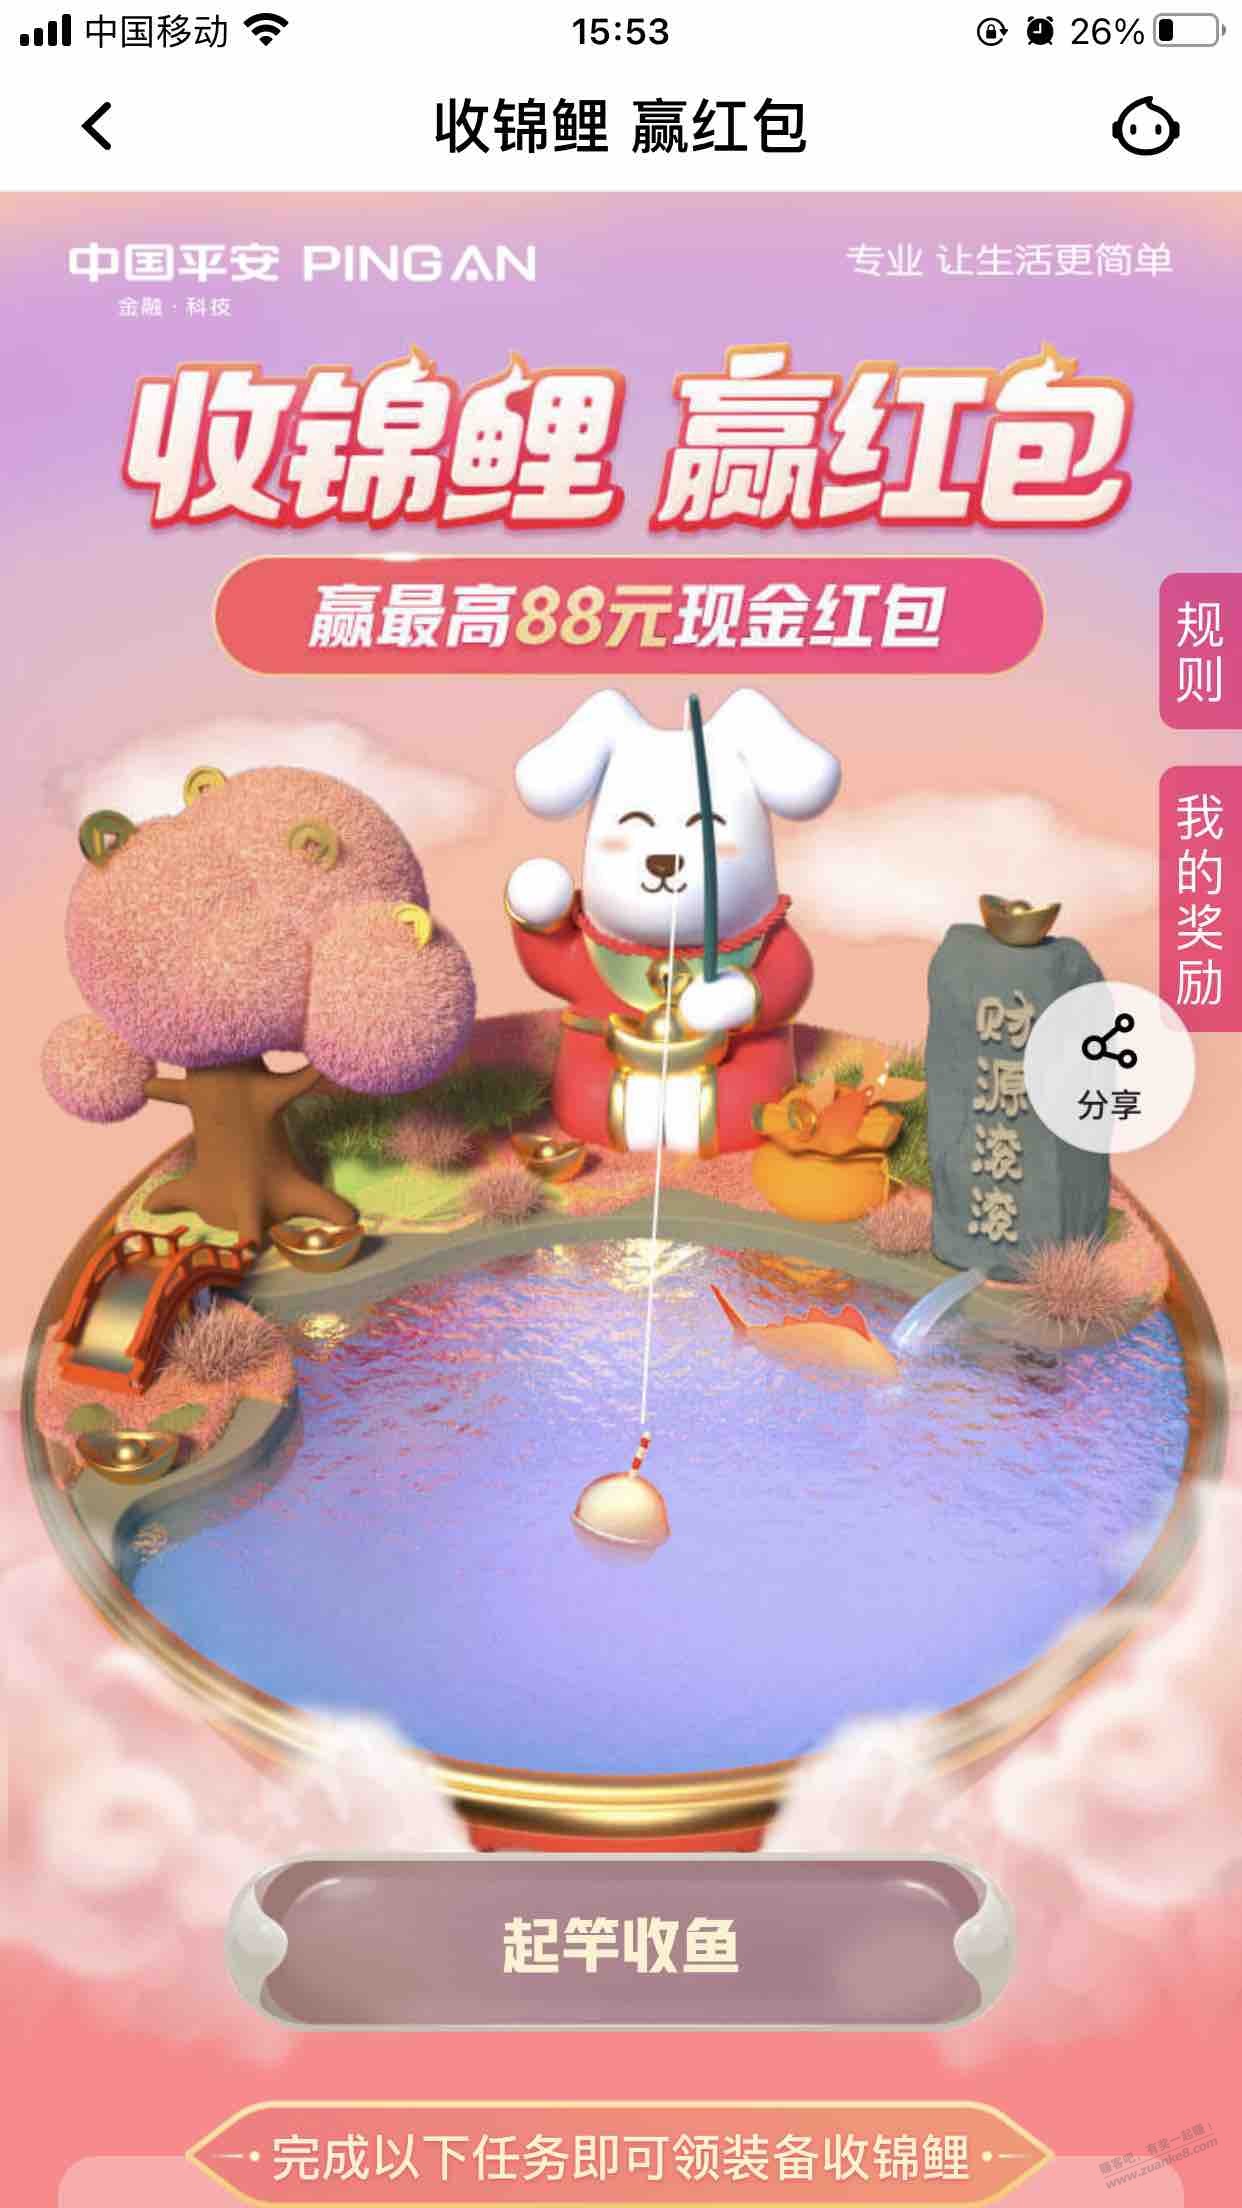 平安口袋app-收锦鲤 赢红包-惠小助(52huixz.com)